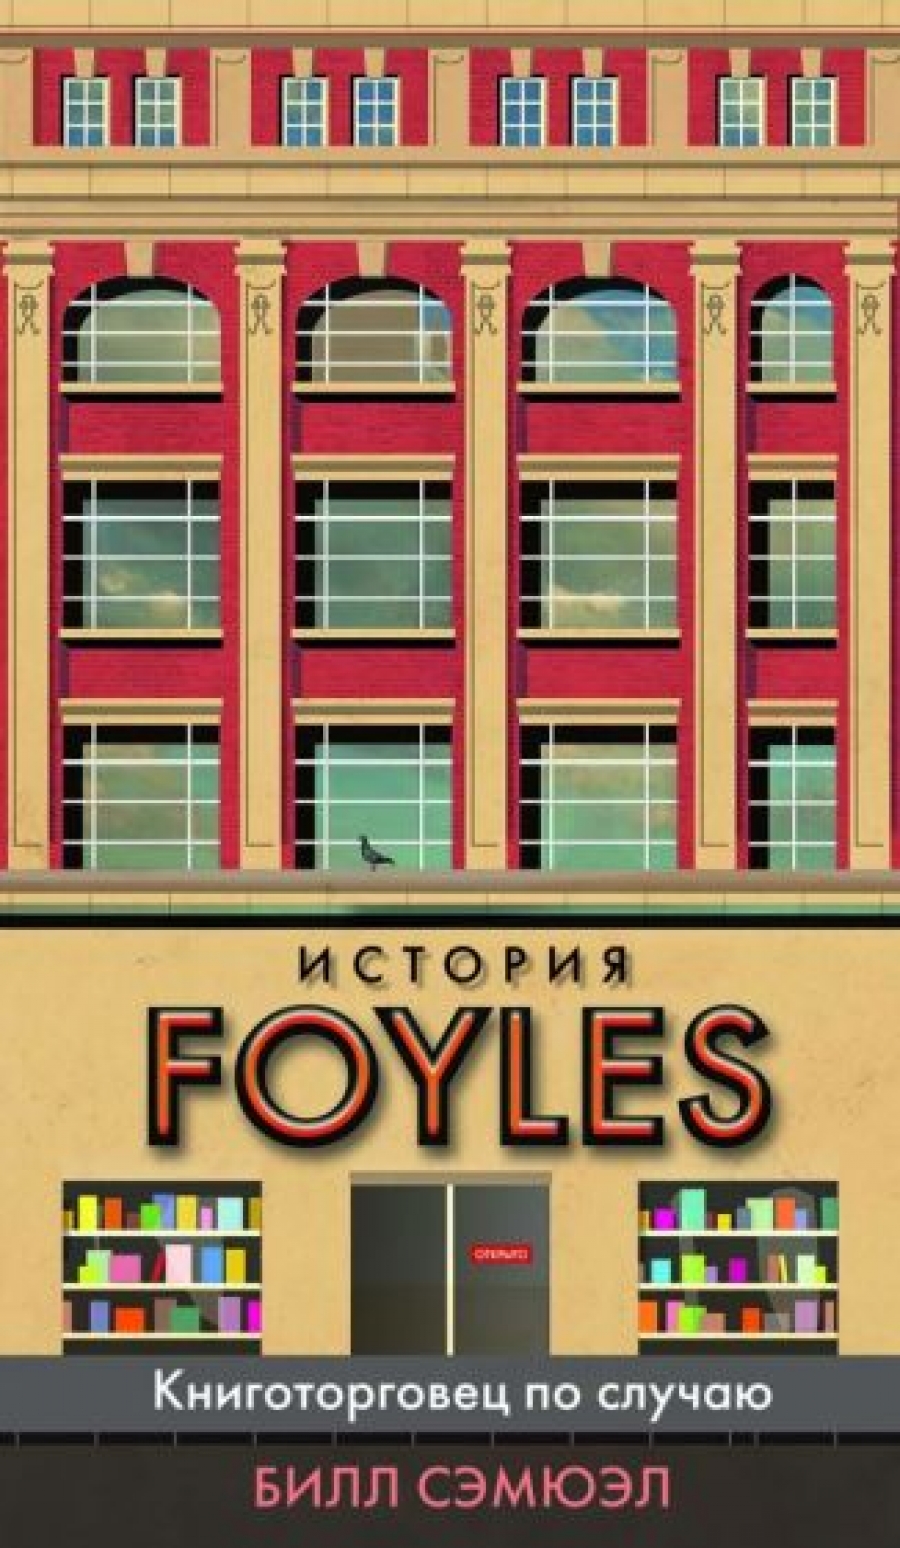  .  Foyles.    